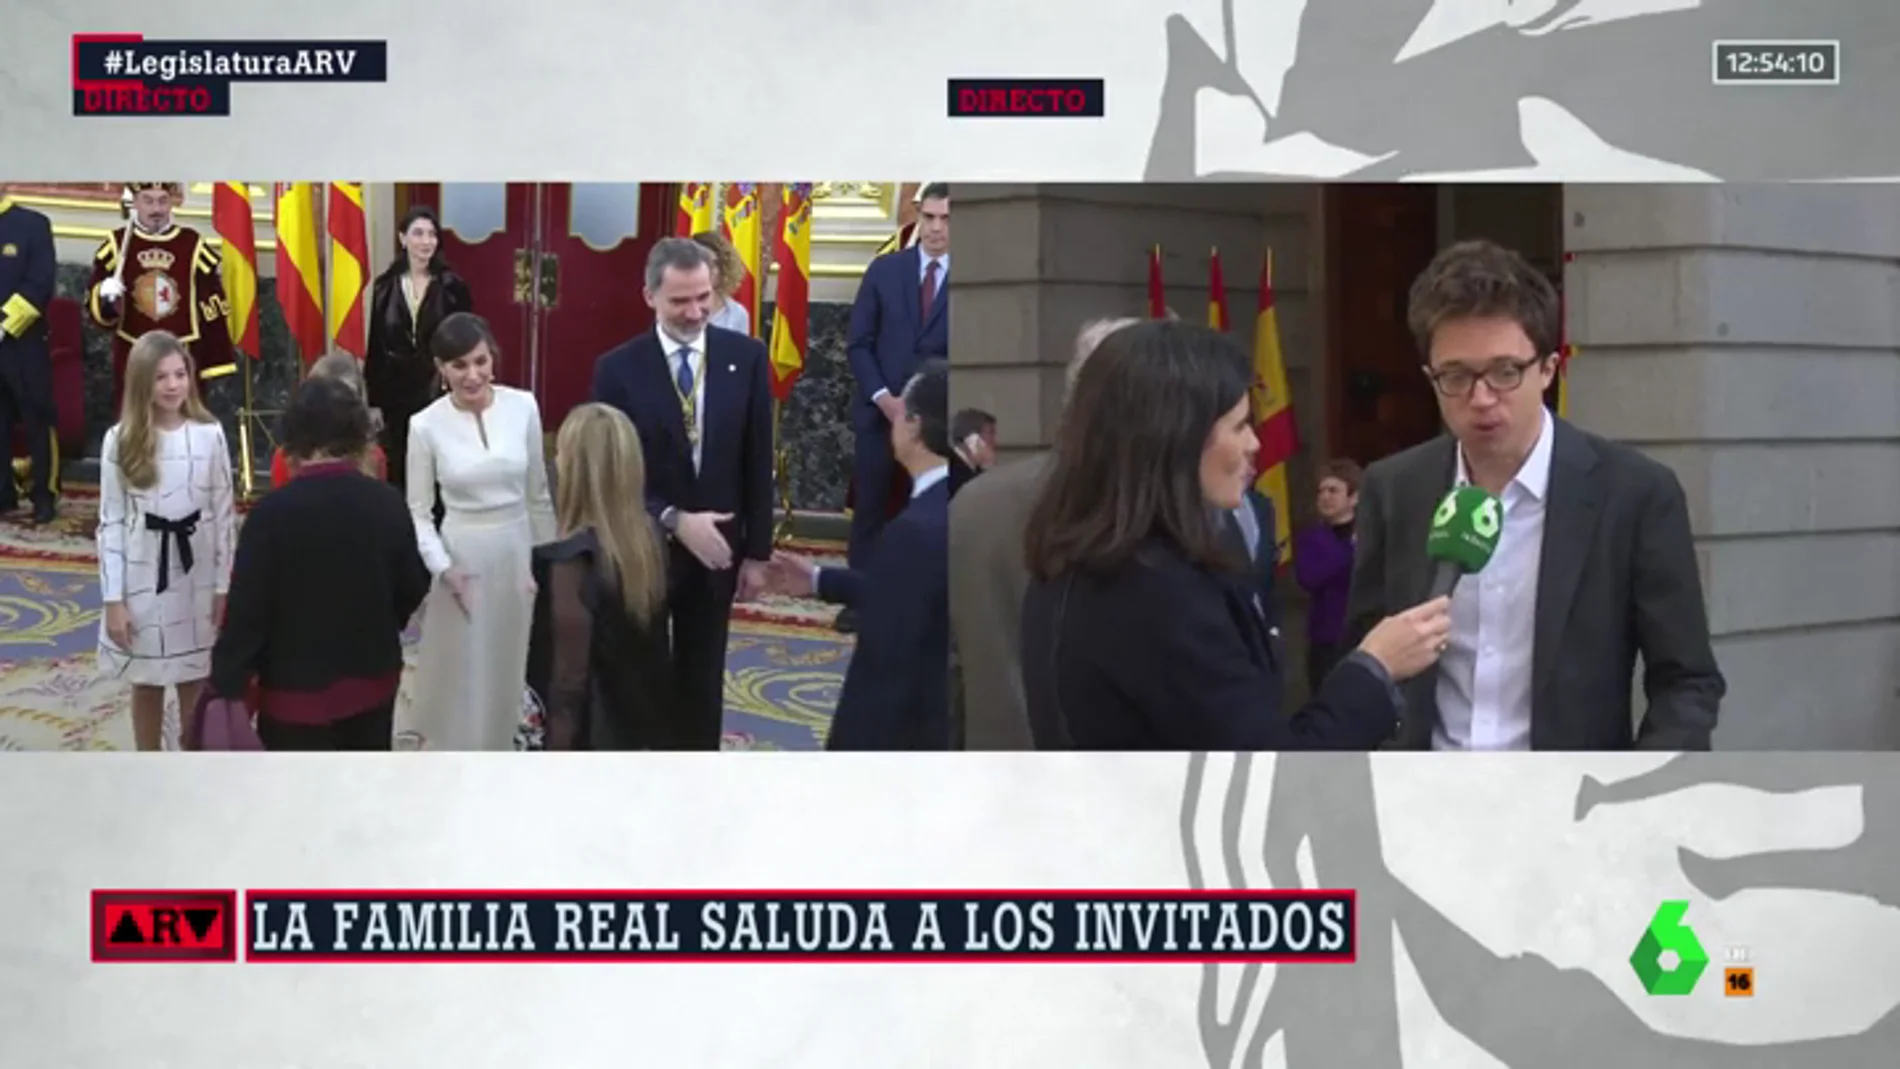 Íñigo Errejón, sobre el discurso de Felipe VI: "He echado en falta las cuestiones que afectan a los españoles en el día a día"